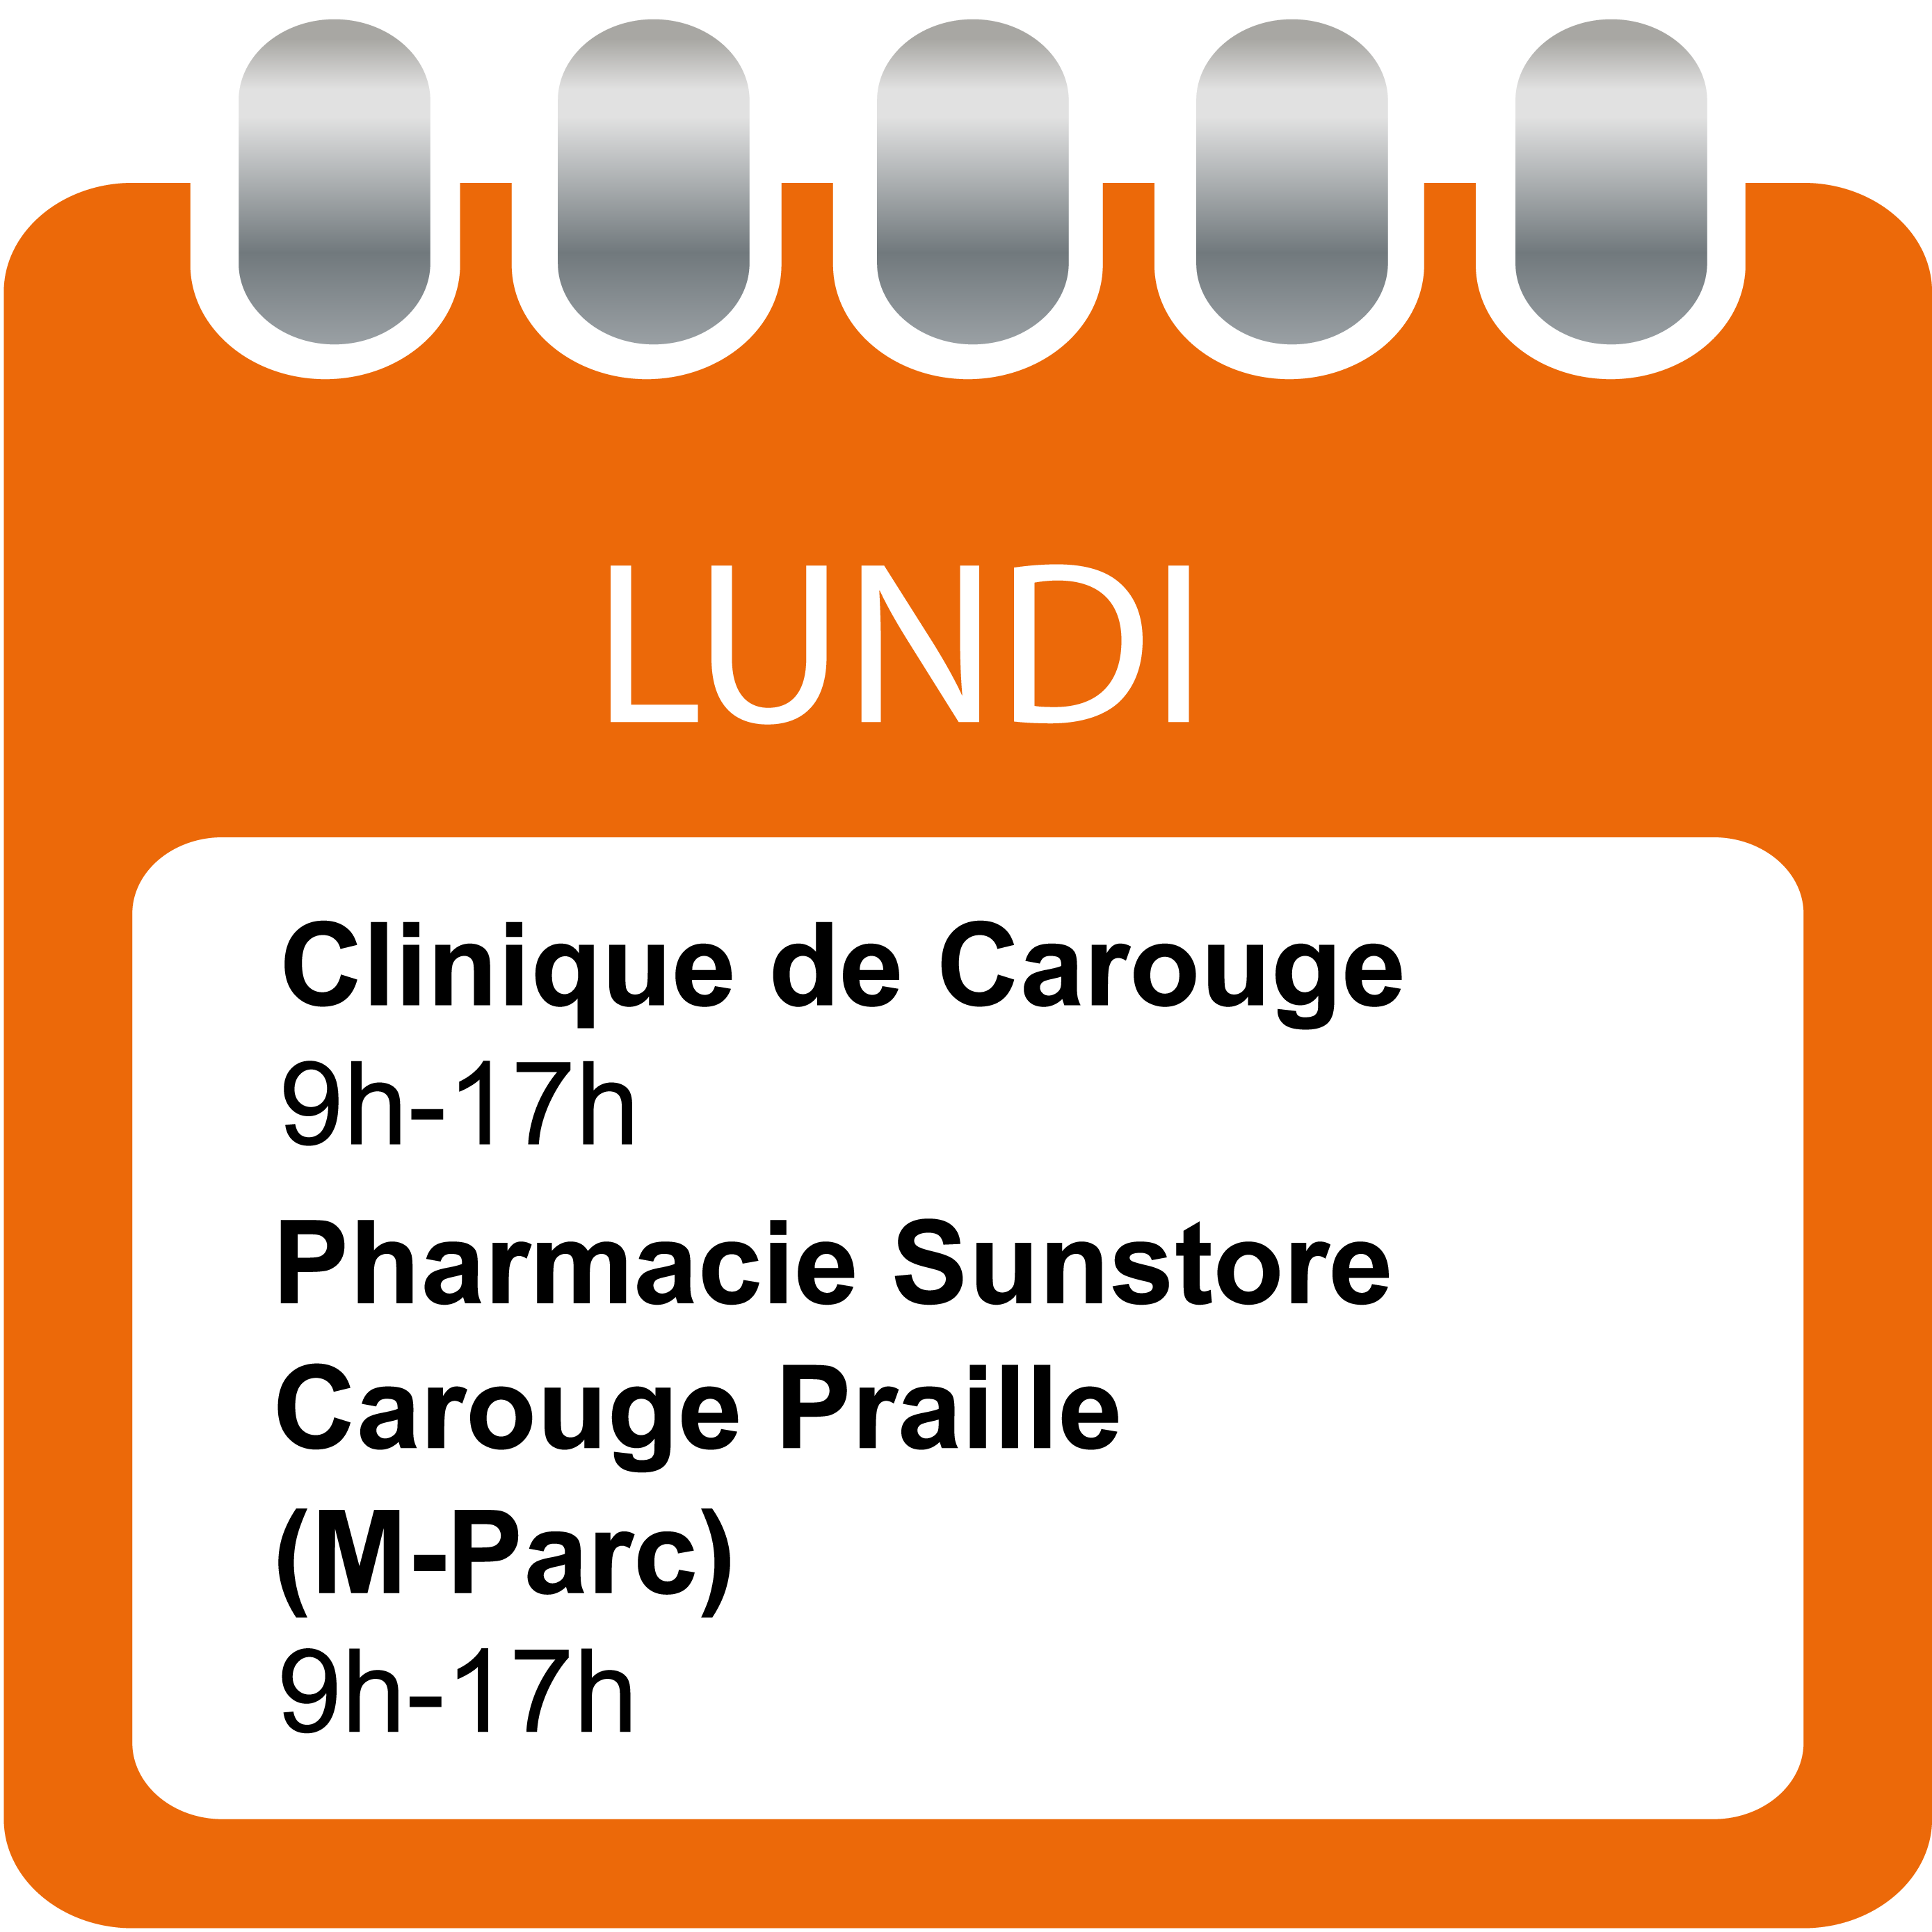 Lundi - Clinique de Carouge et Pharmacie Sunstore Carouge Praille (M-Parc)